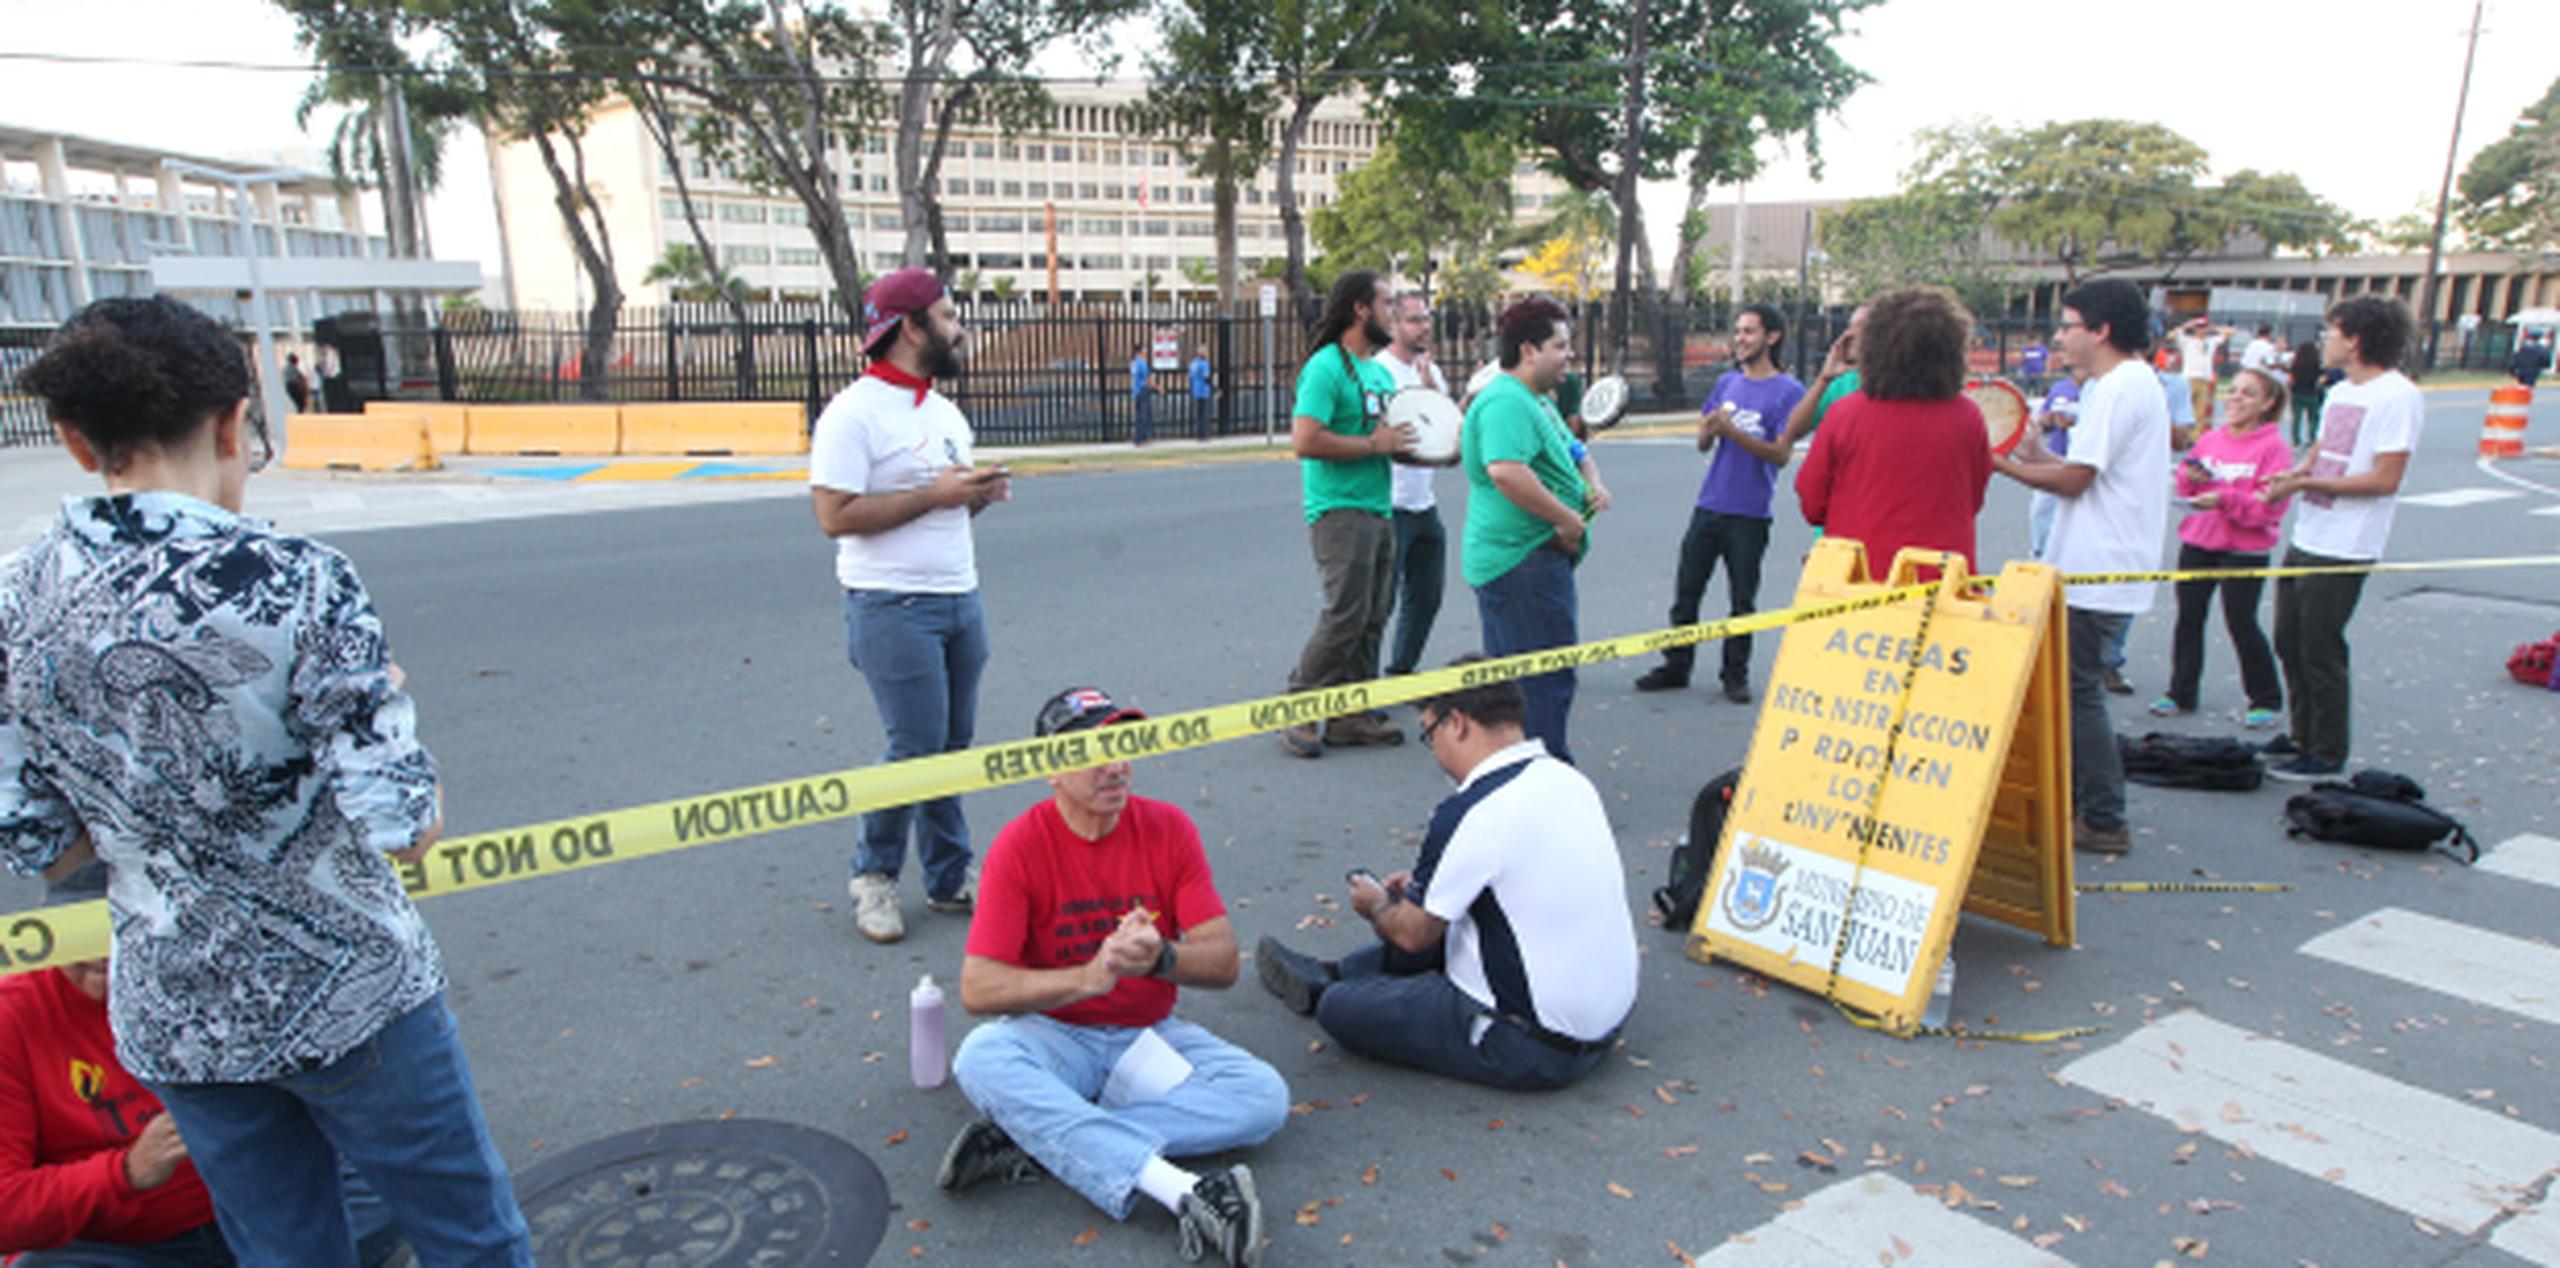 Una de las protestas se realiza frente al Tribunal Federal. (alex.figueroa@gfrmedia.com)